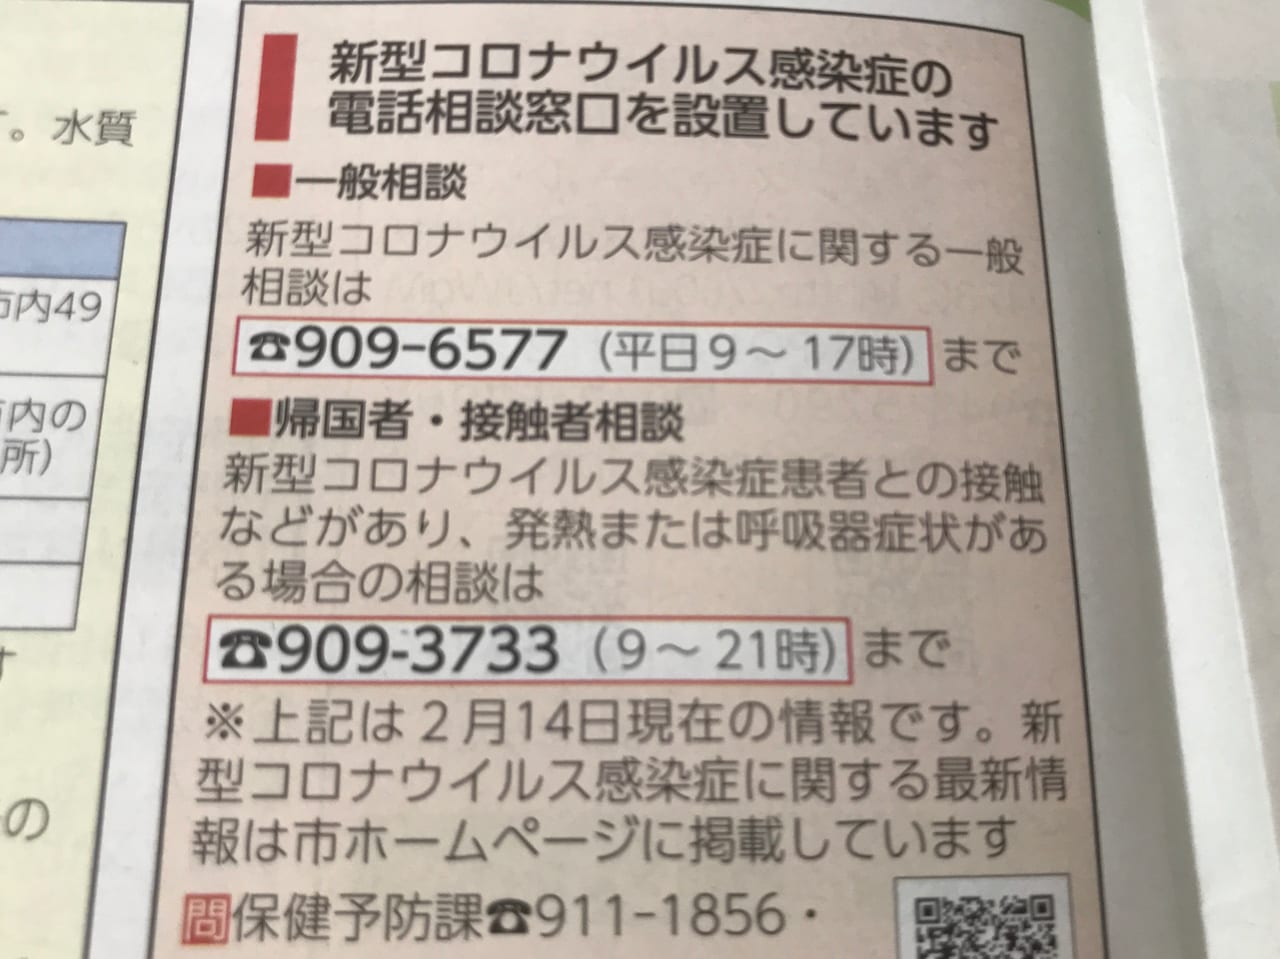 松山市 松山市は年3月4日から休校決定 新型コロナウイルスの影響が甚大 各所イベントも中止が相次いでいます 号外net 松山市 中予地方